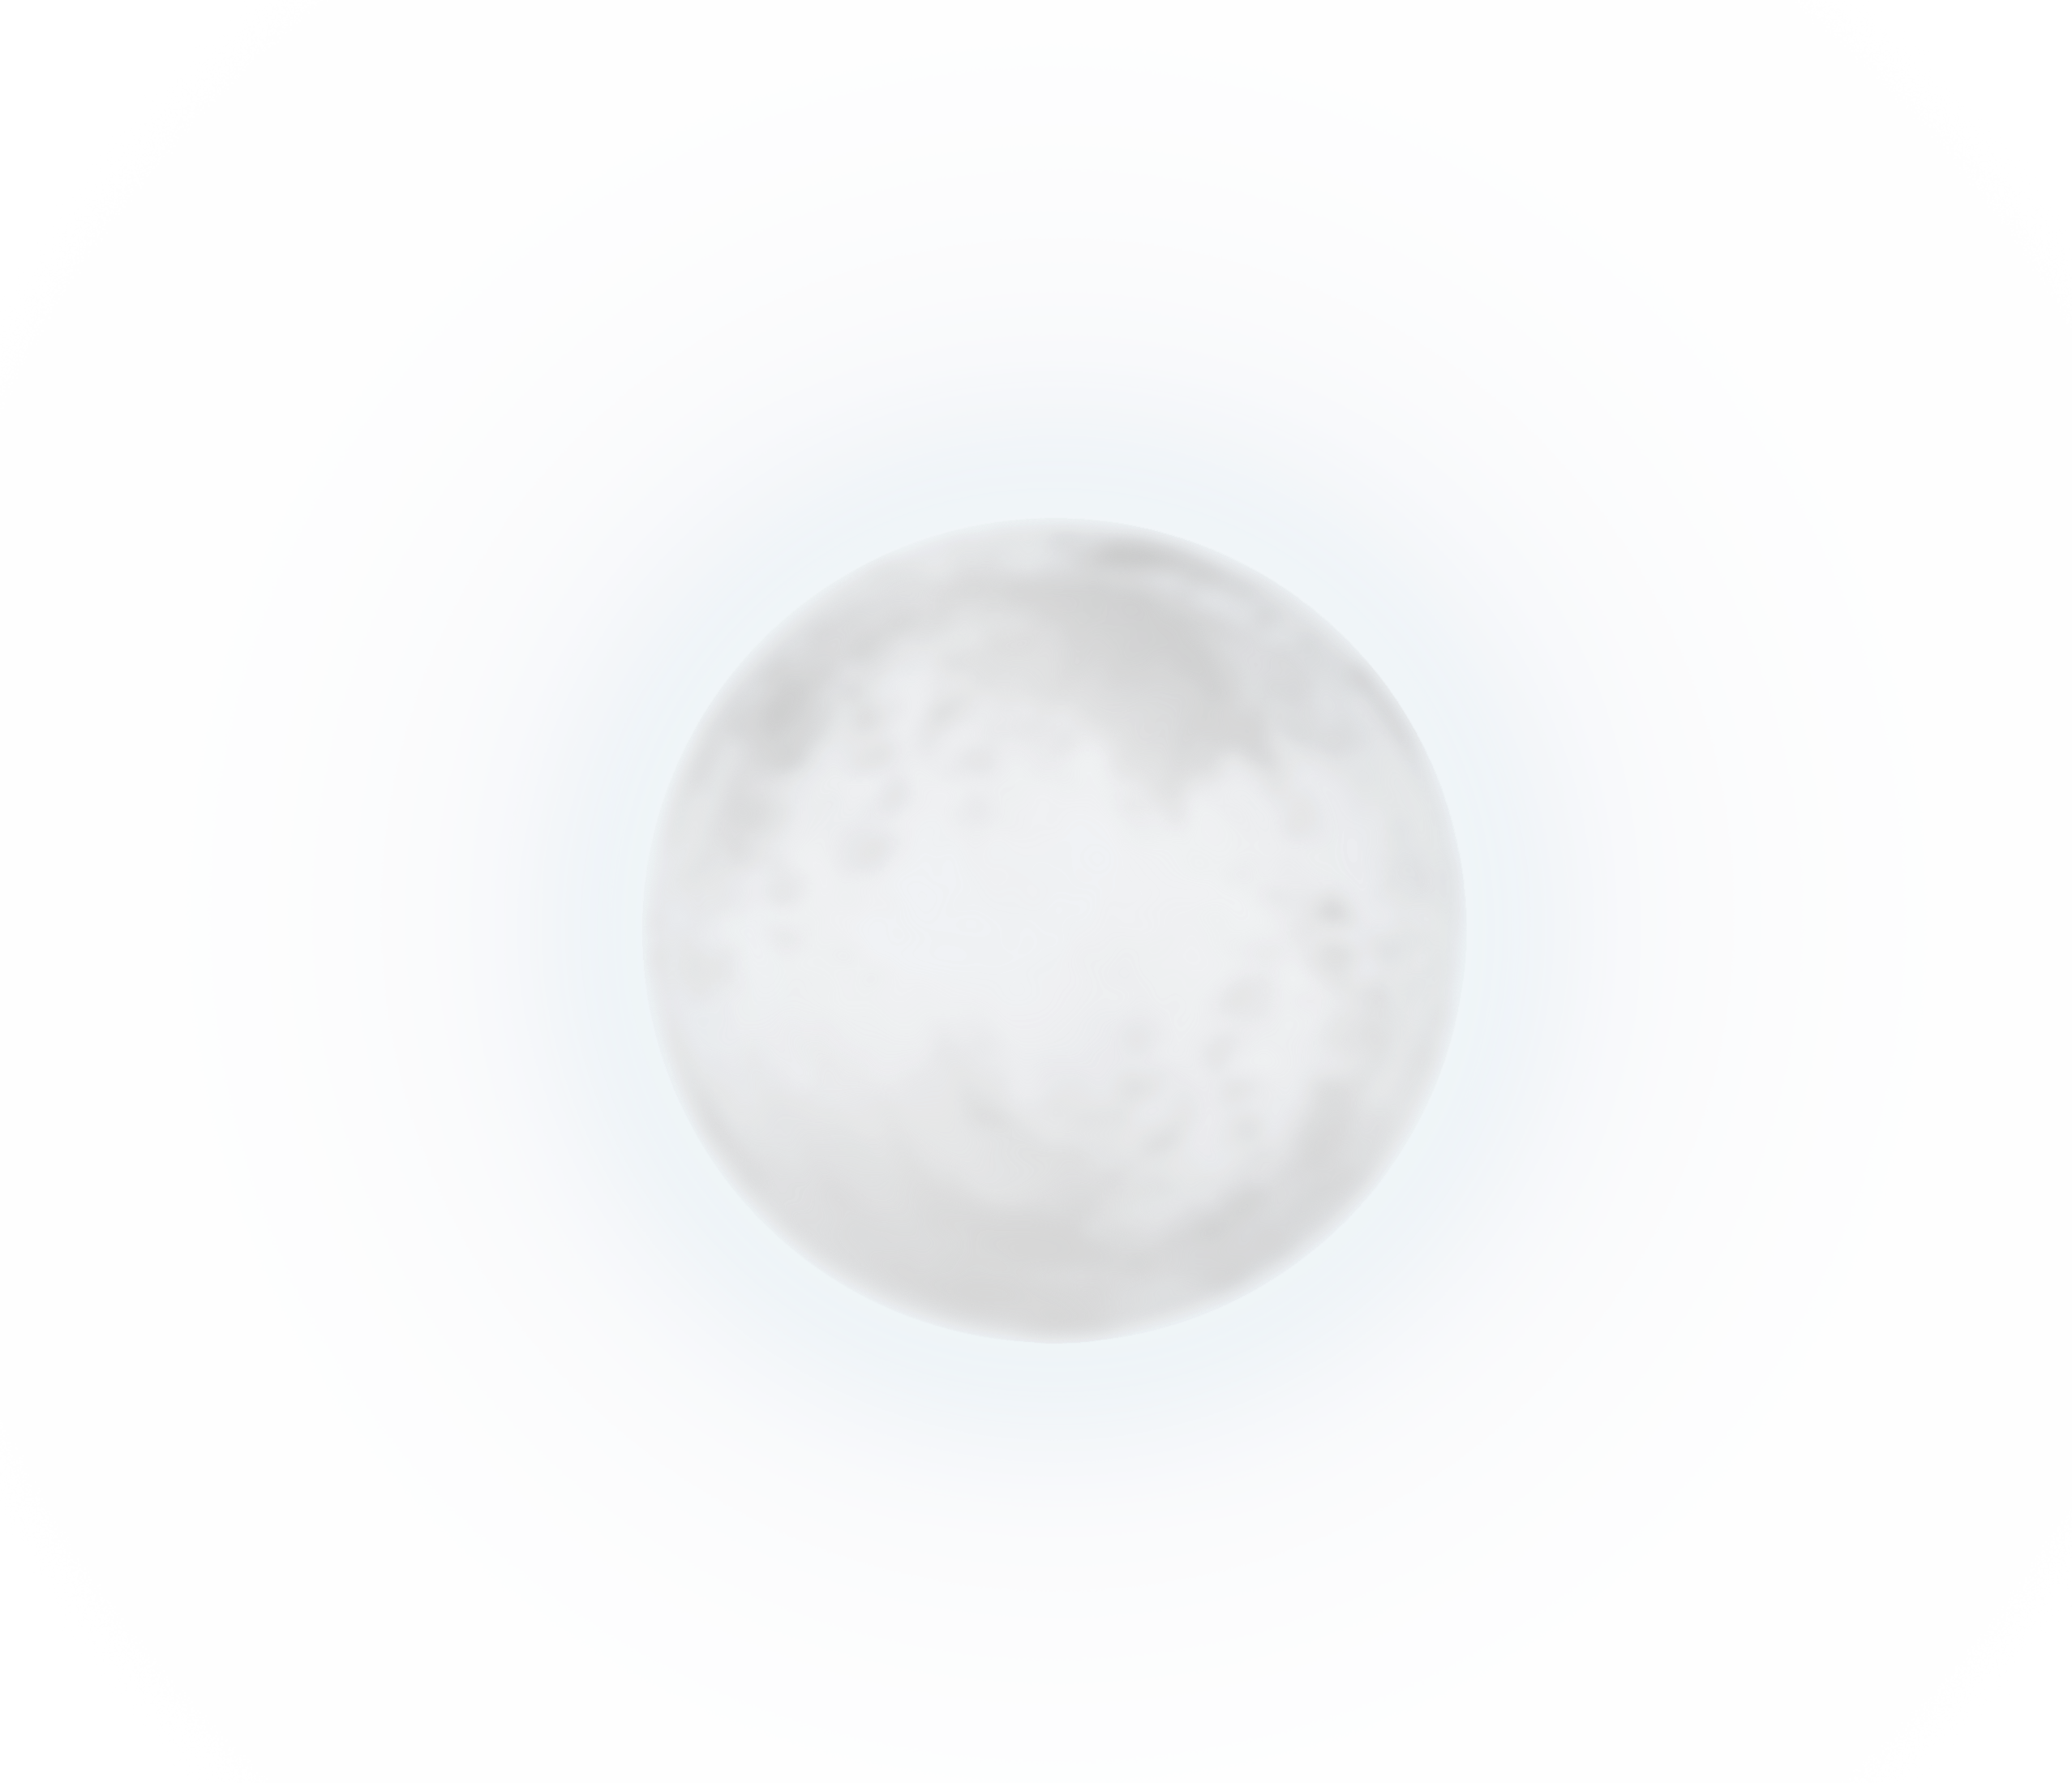 Hình ảnh clipart mặt trăng trắng, tượng trưng cho sự trong sáng và độc đáo. Hãy ngắm nhìn hình ảnh và cảm nhận sự đặc biệt của nó.